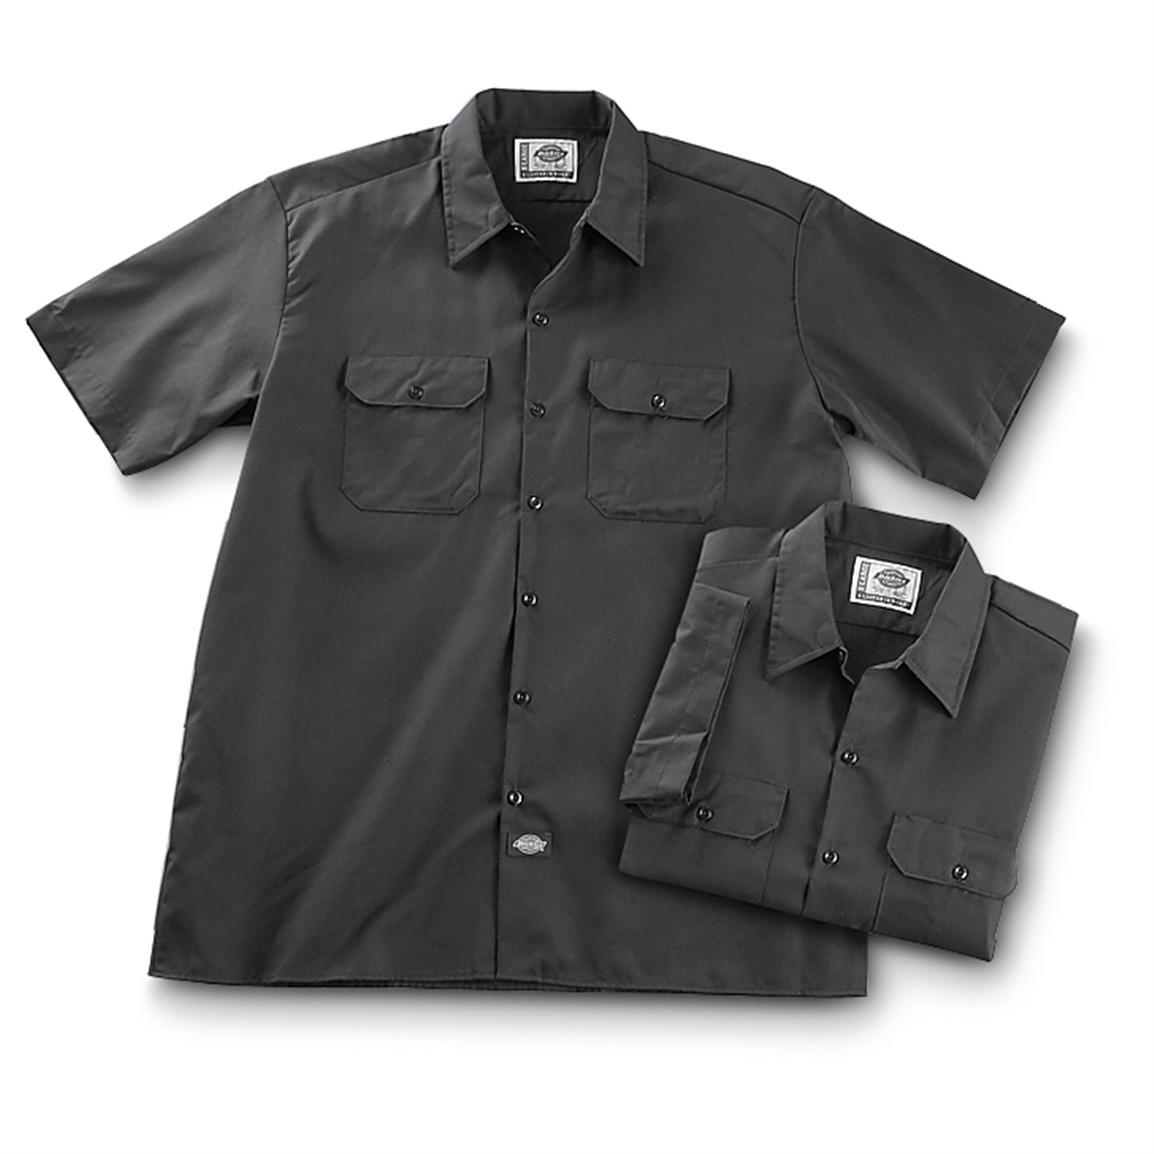 2 Dickies® Short - sleeved Work Shirts - 182962, Shirts at Sportsman's ...